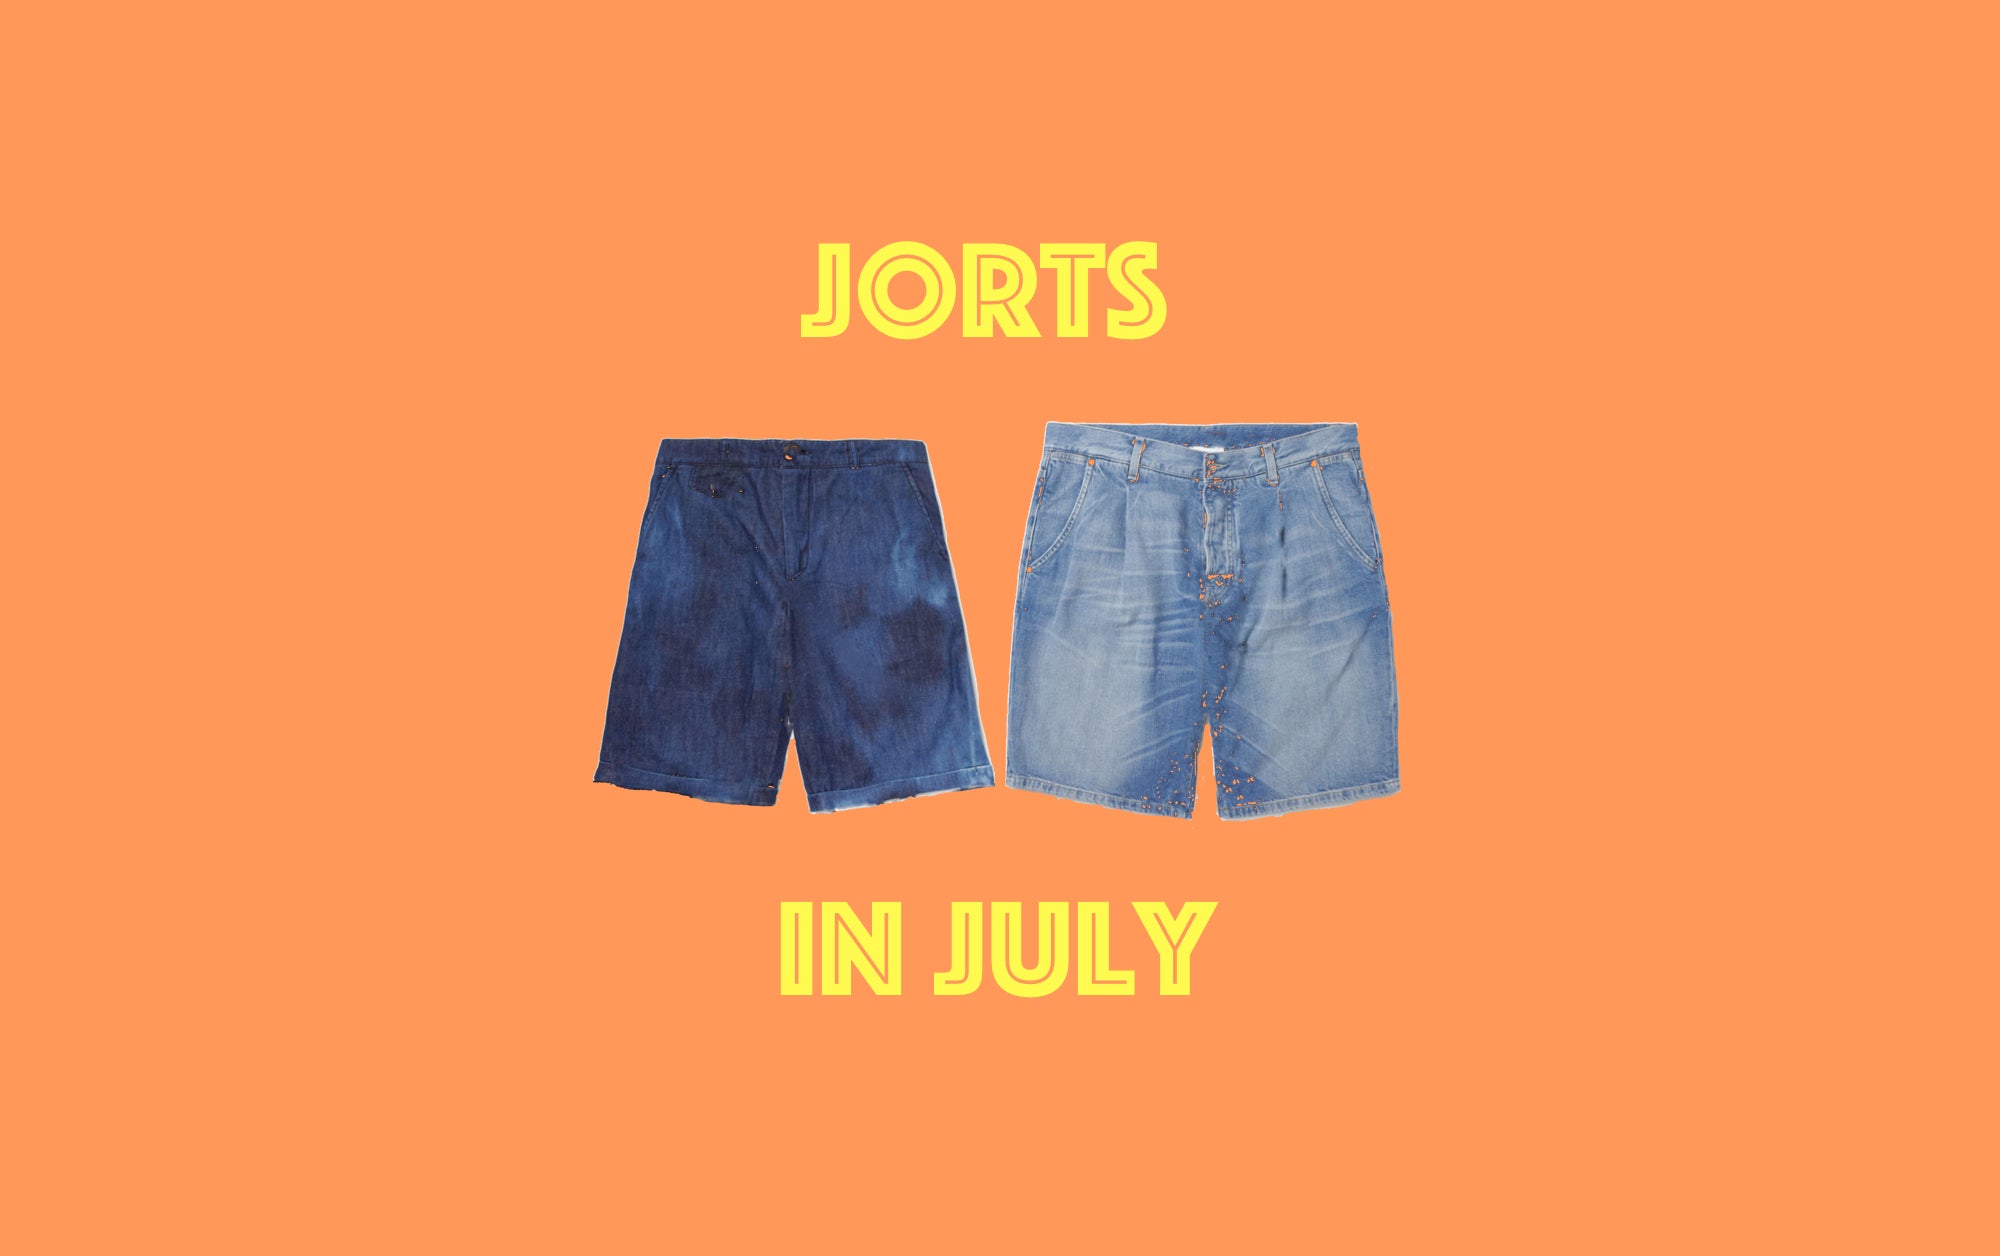 Jorts in July